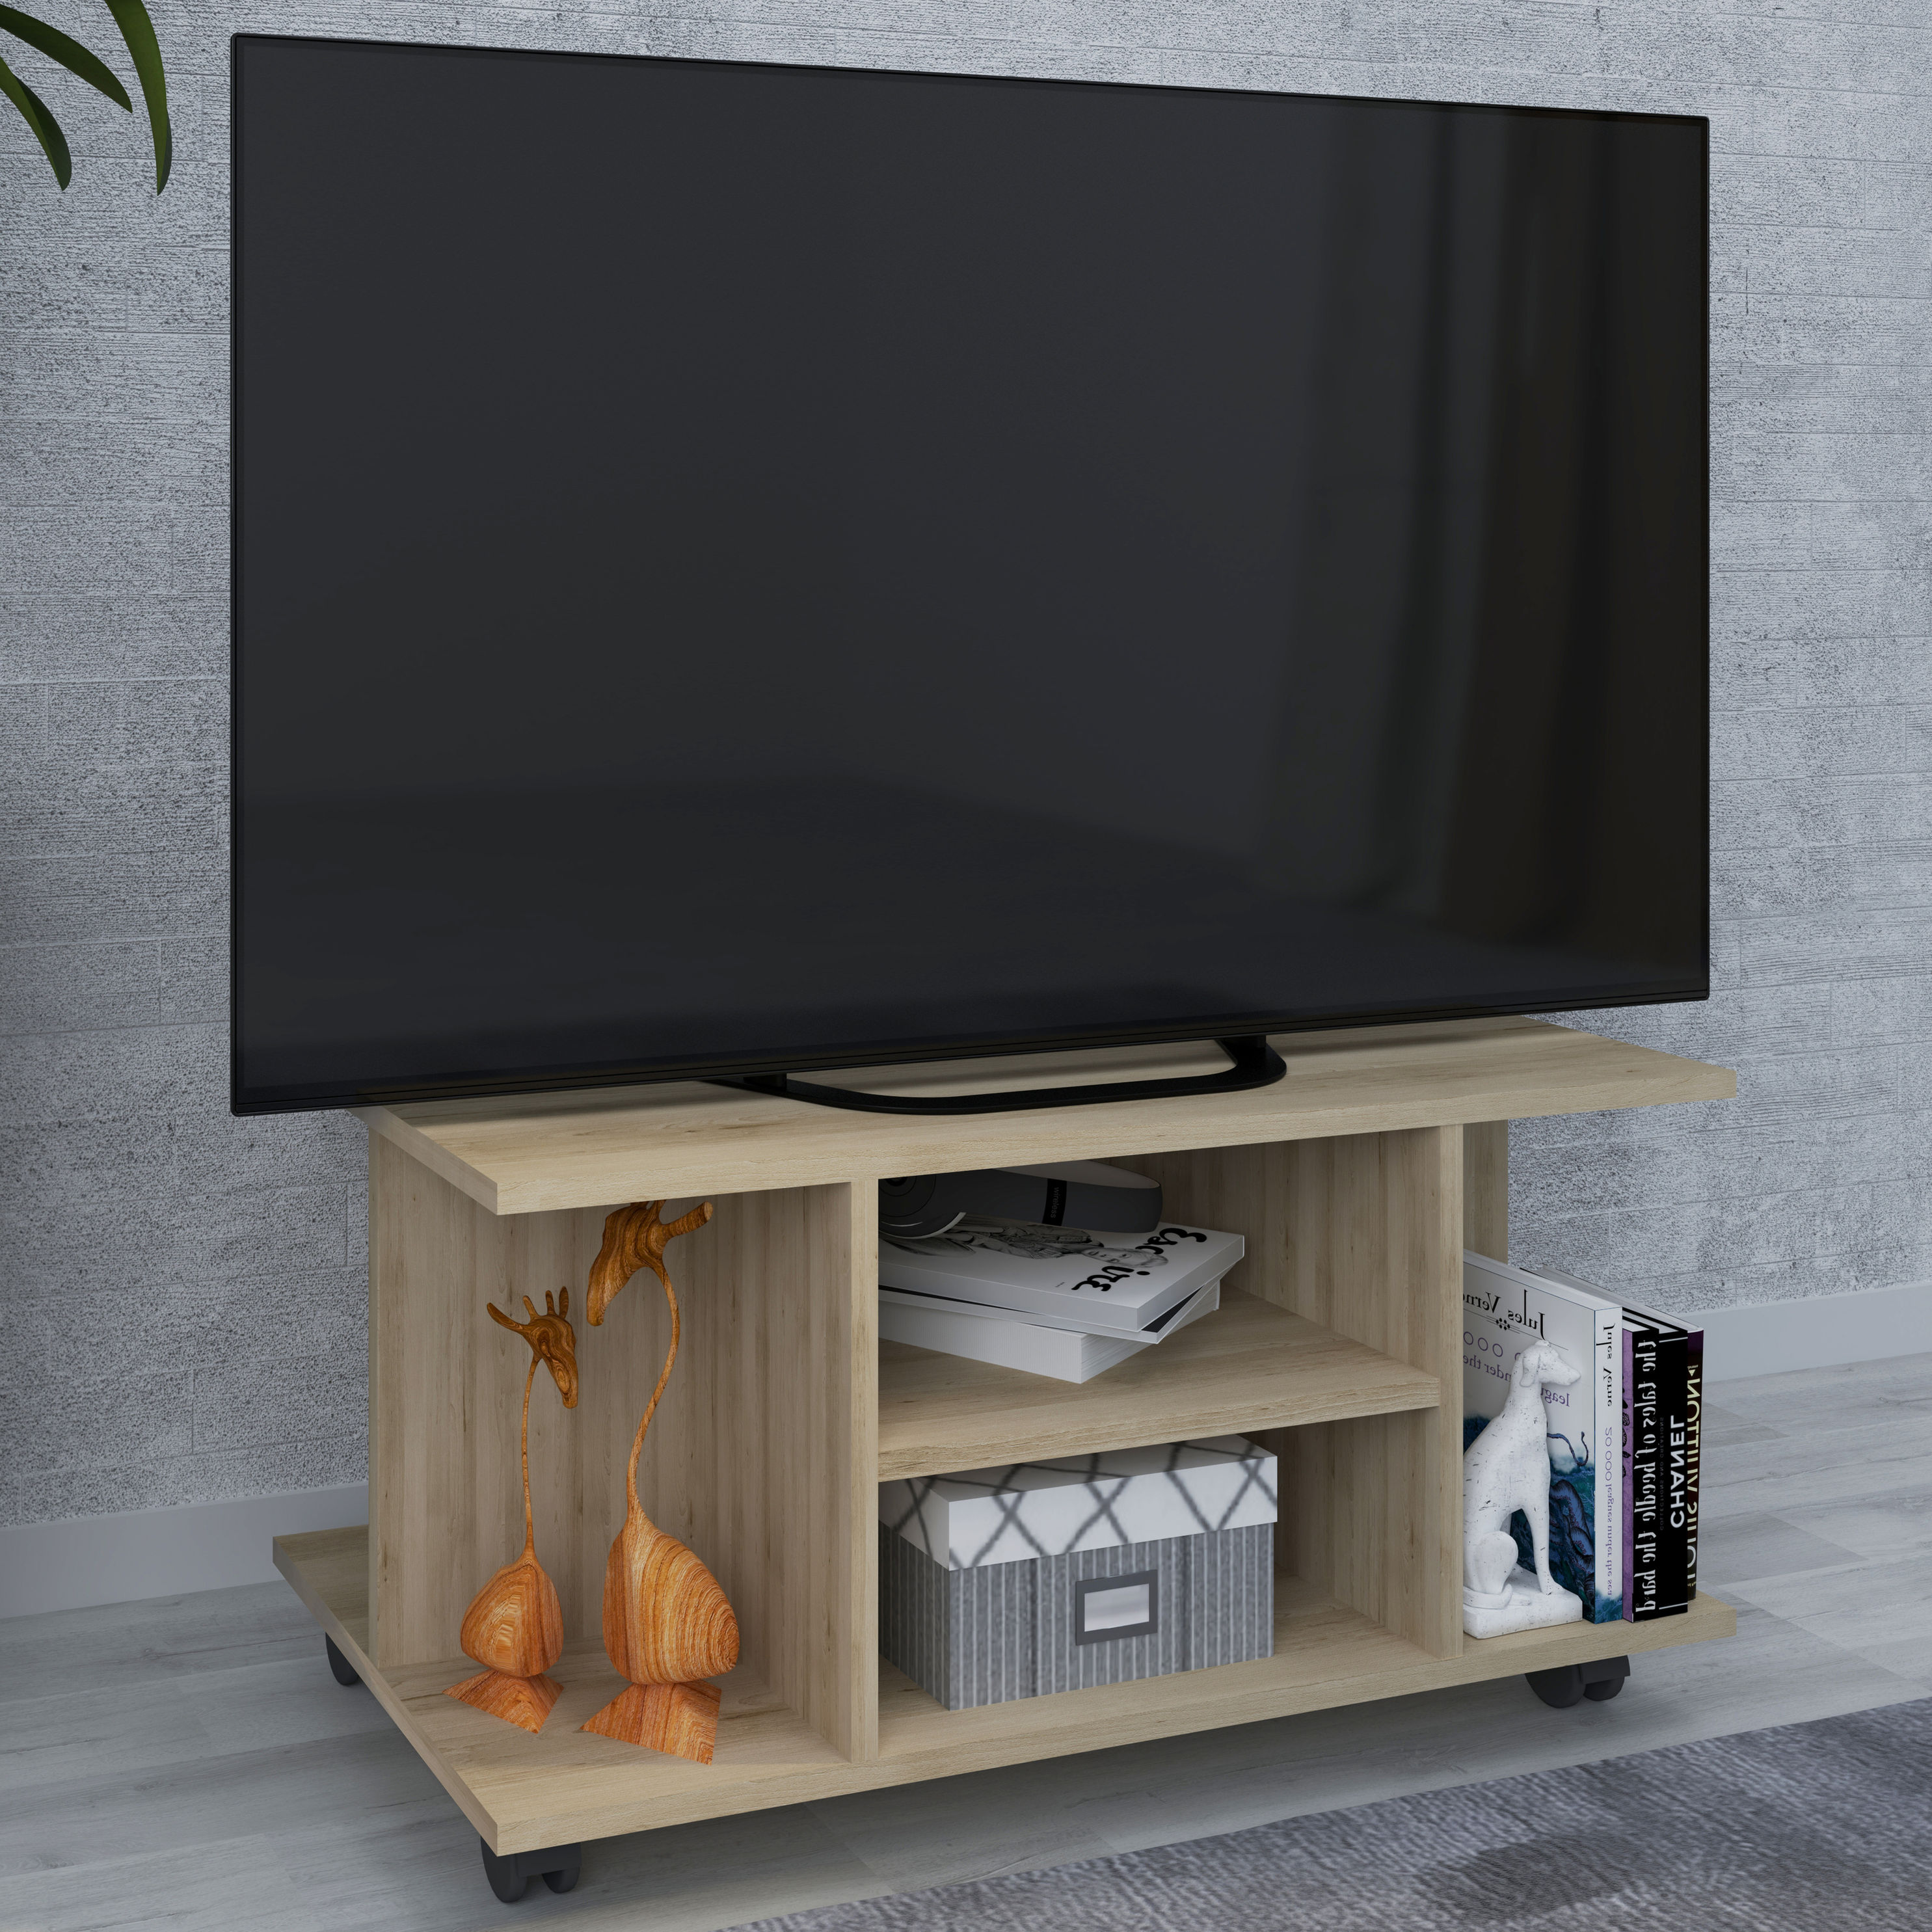 VCM Holz TV Lowboard Rollen Fernsehschrank Tisch Konsole rollbar Möbel  Fernsehtisch Findalo Farbe: Buche | Weltbild.de